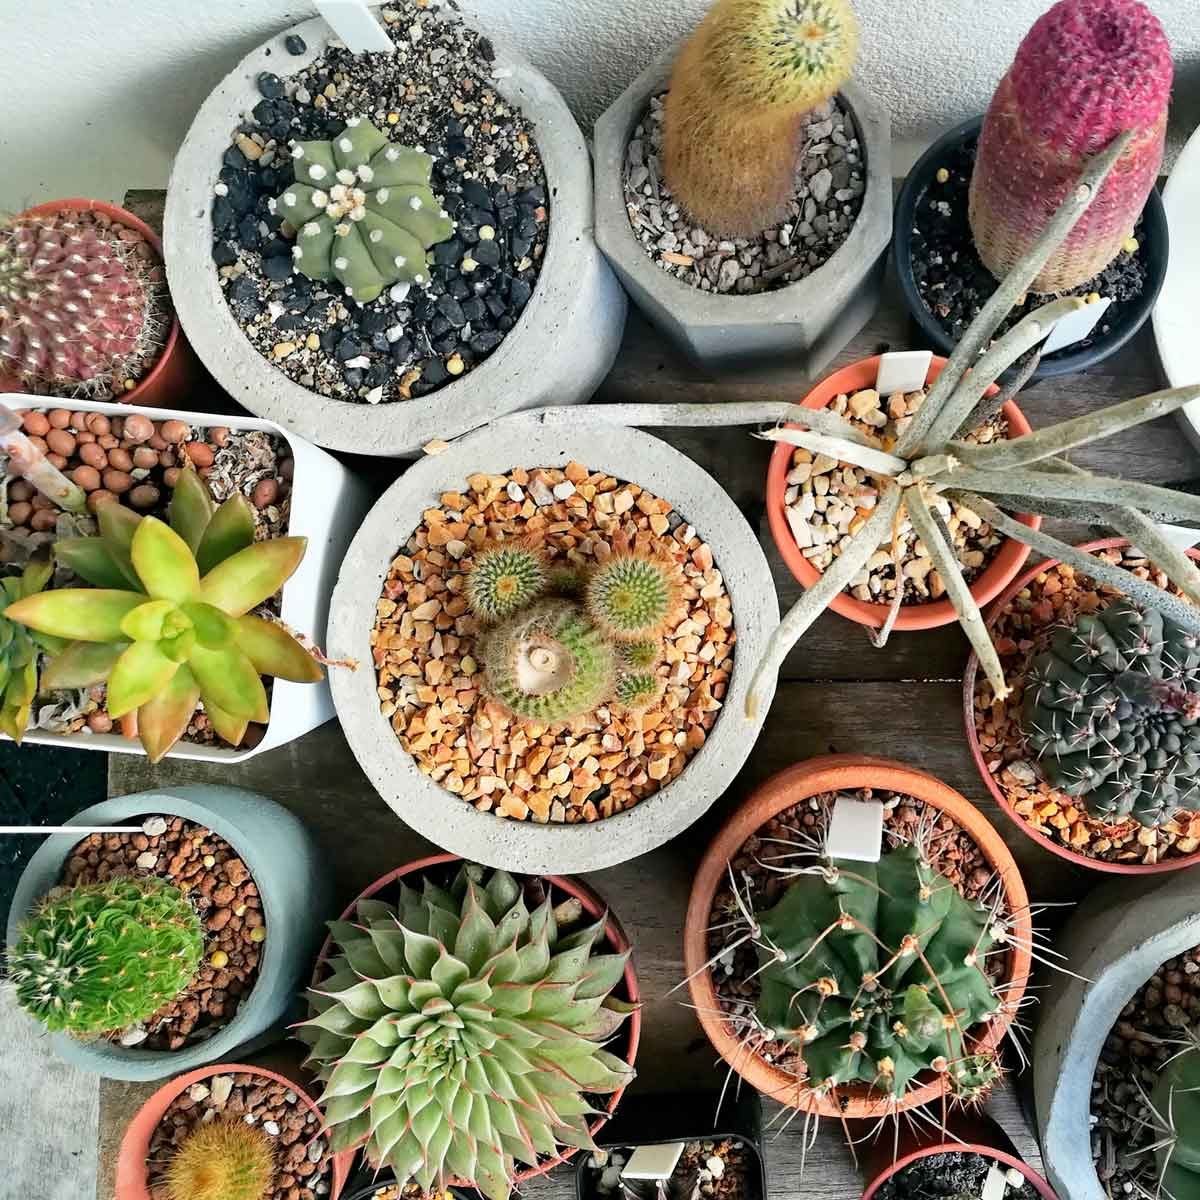 indoor cactus names